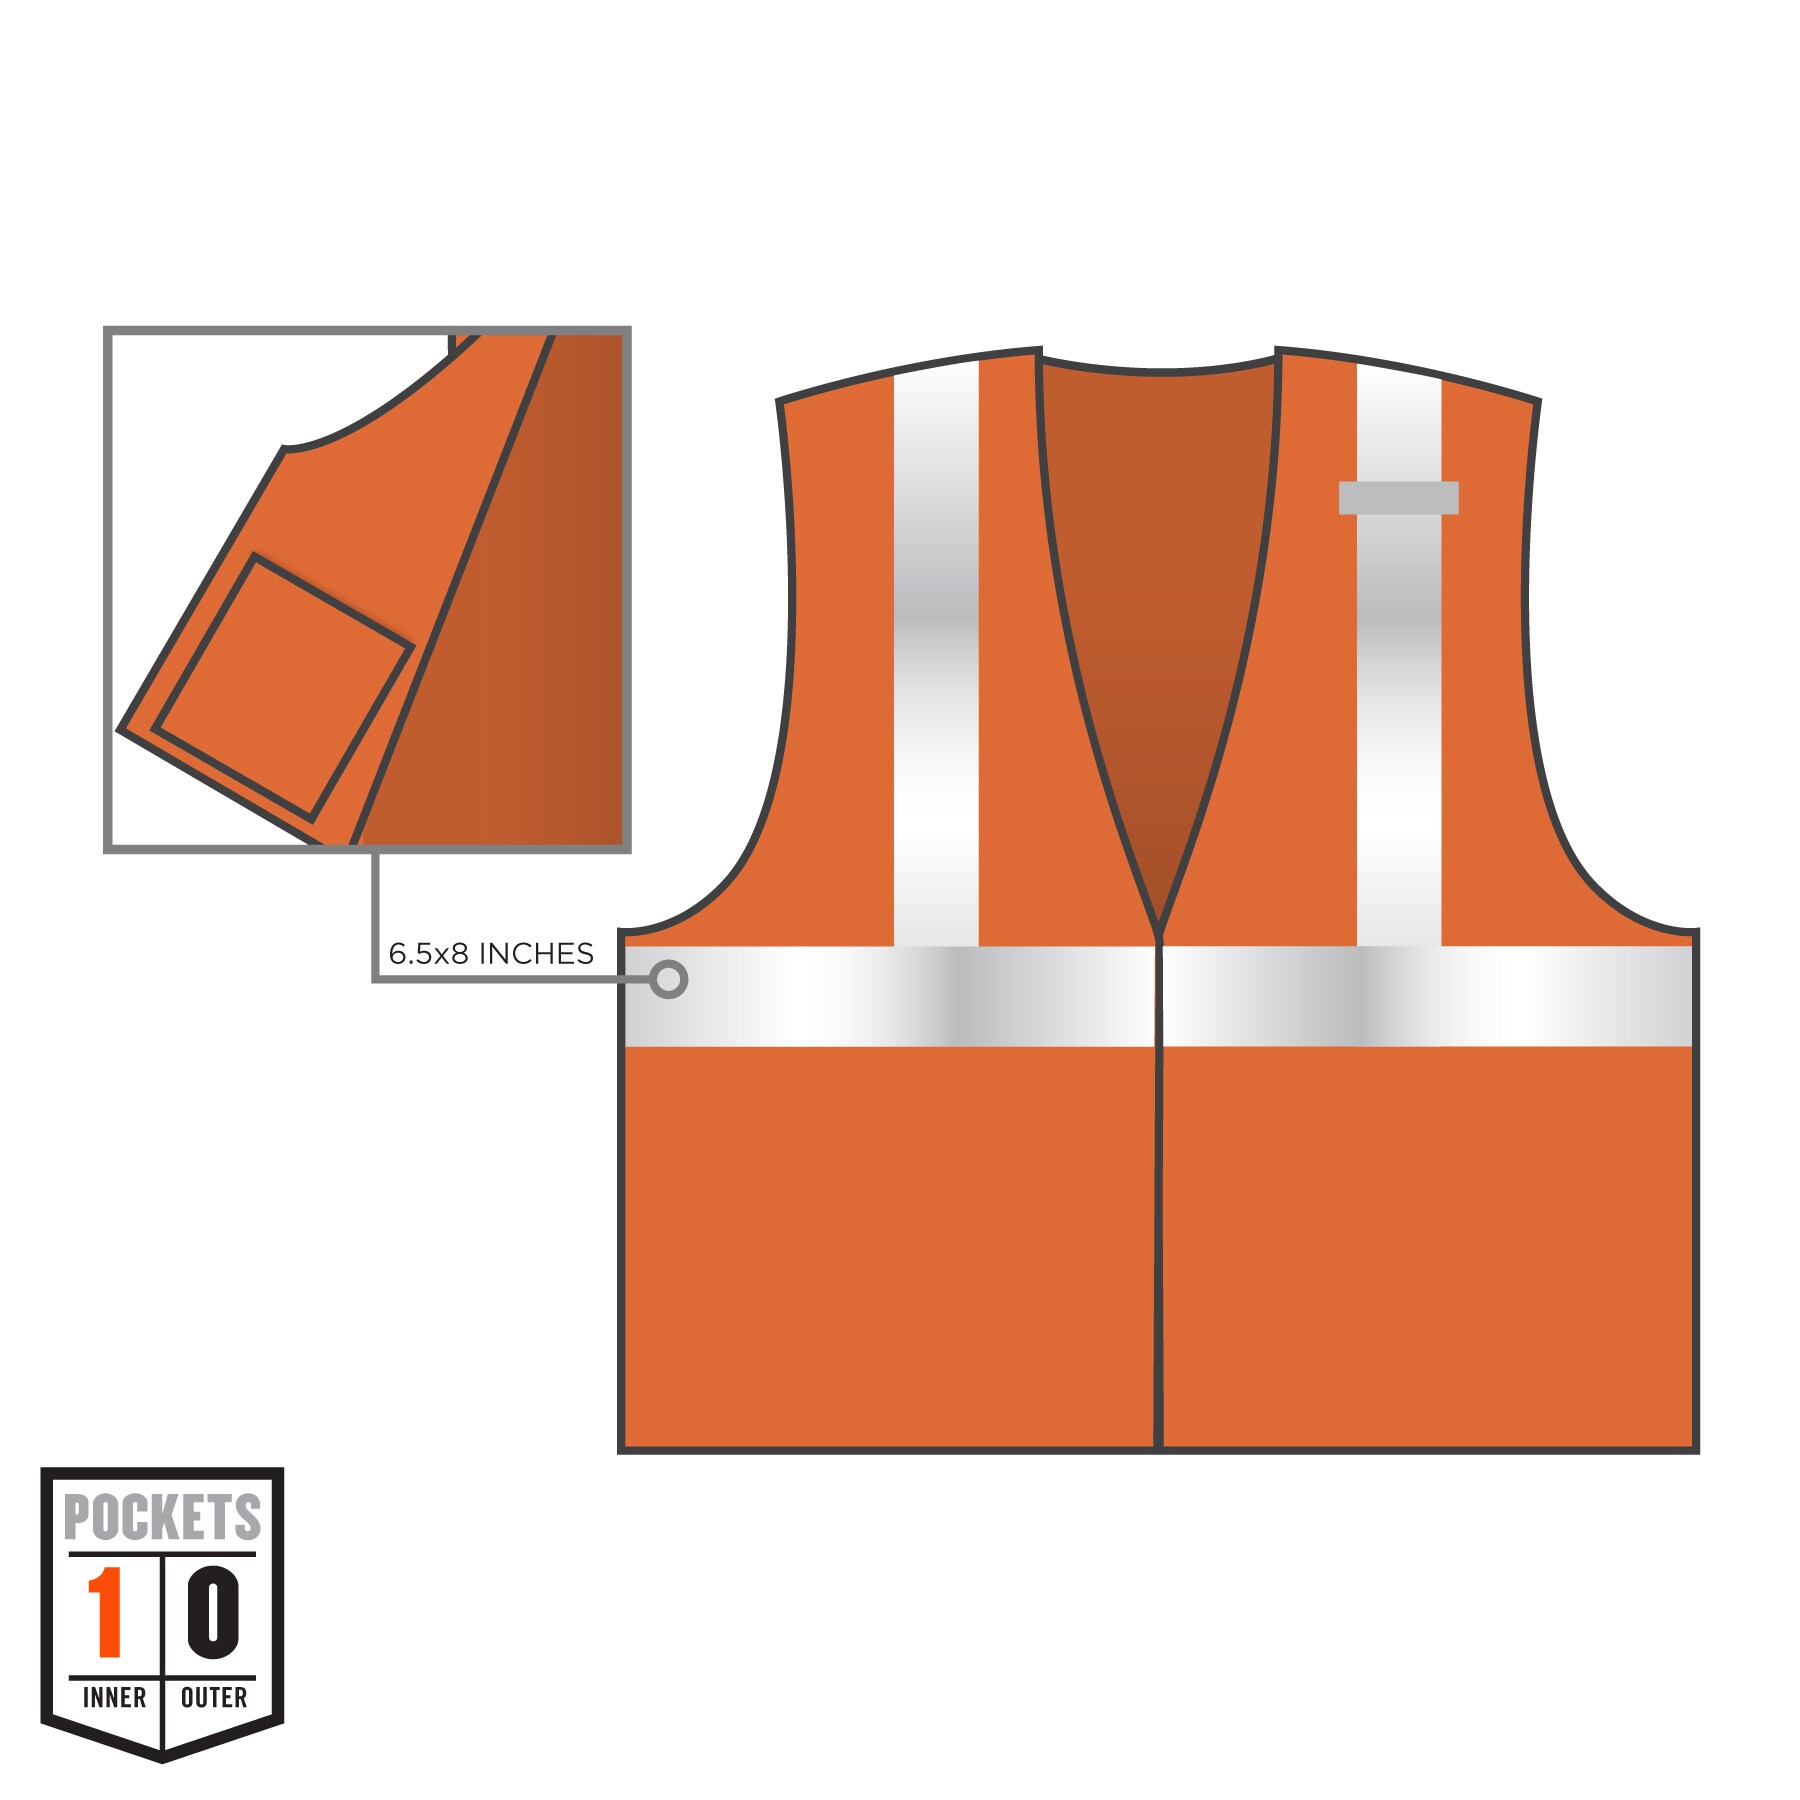 Unisex Premium E Vest, Orange